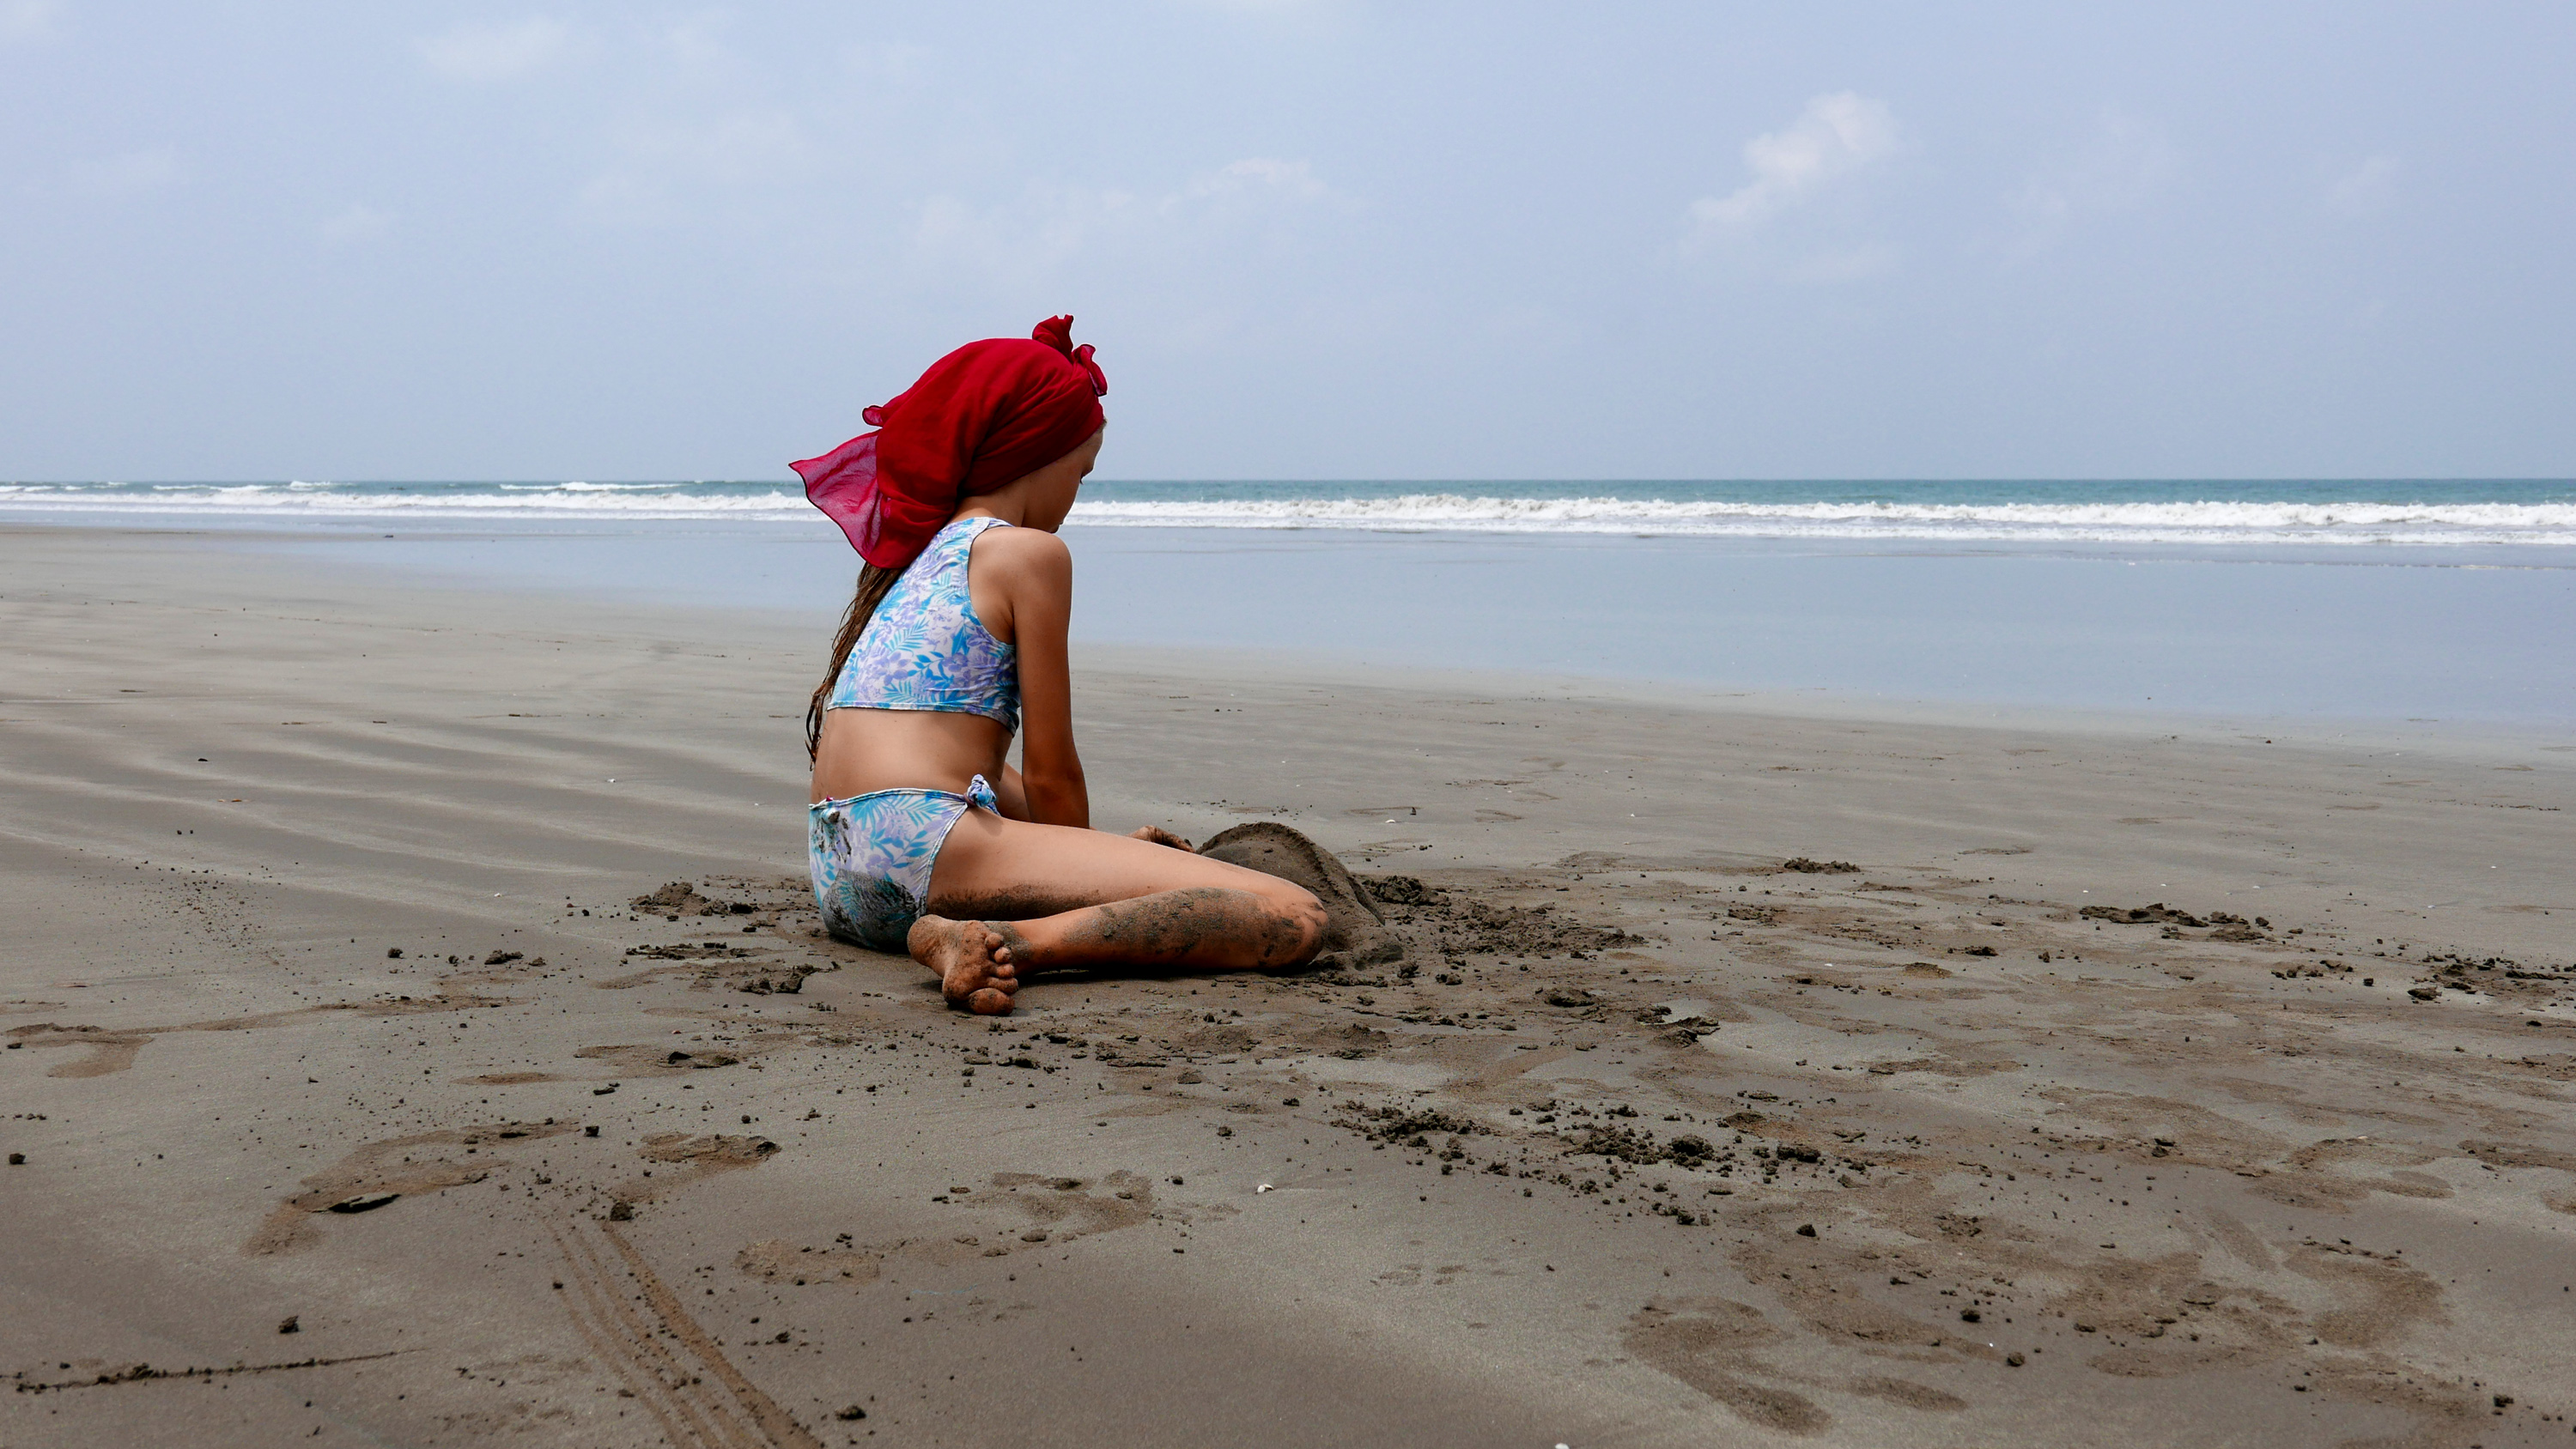 Morjim Beach Goa